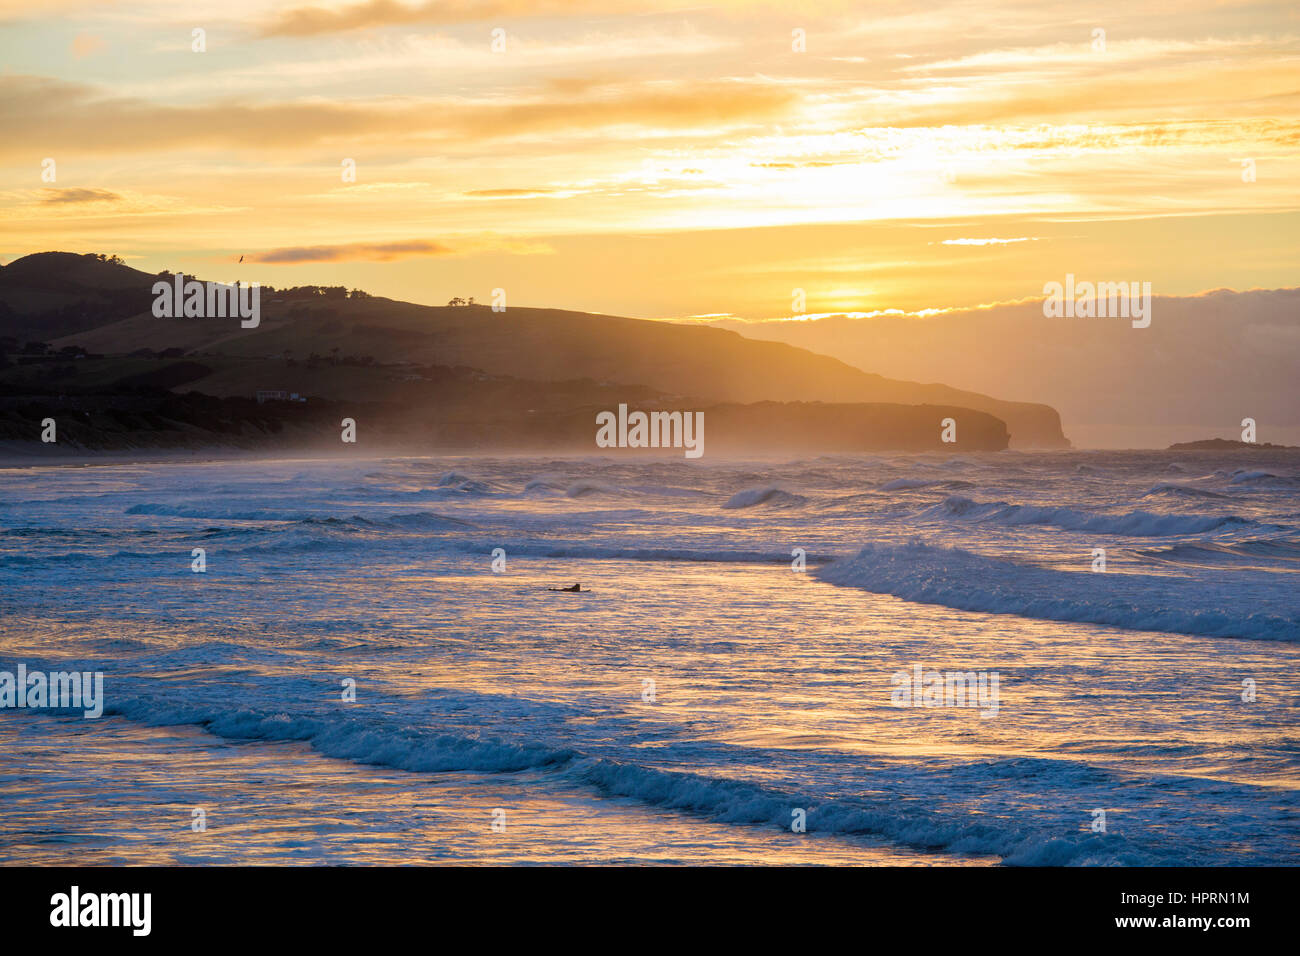 Dunedin, Otago, Neuseeland. Surfer paddeln um Wellen zu reiten, vom Pazifischen Ozean aus St Clair Beach, Sonnenaufgang, goldenes Licht spiegelt sich im Wasser. Stockfoto